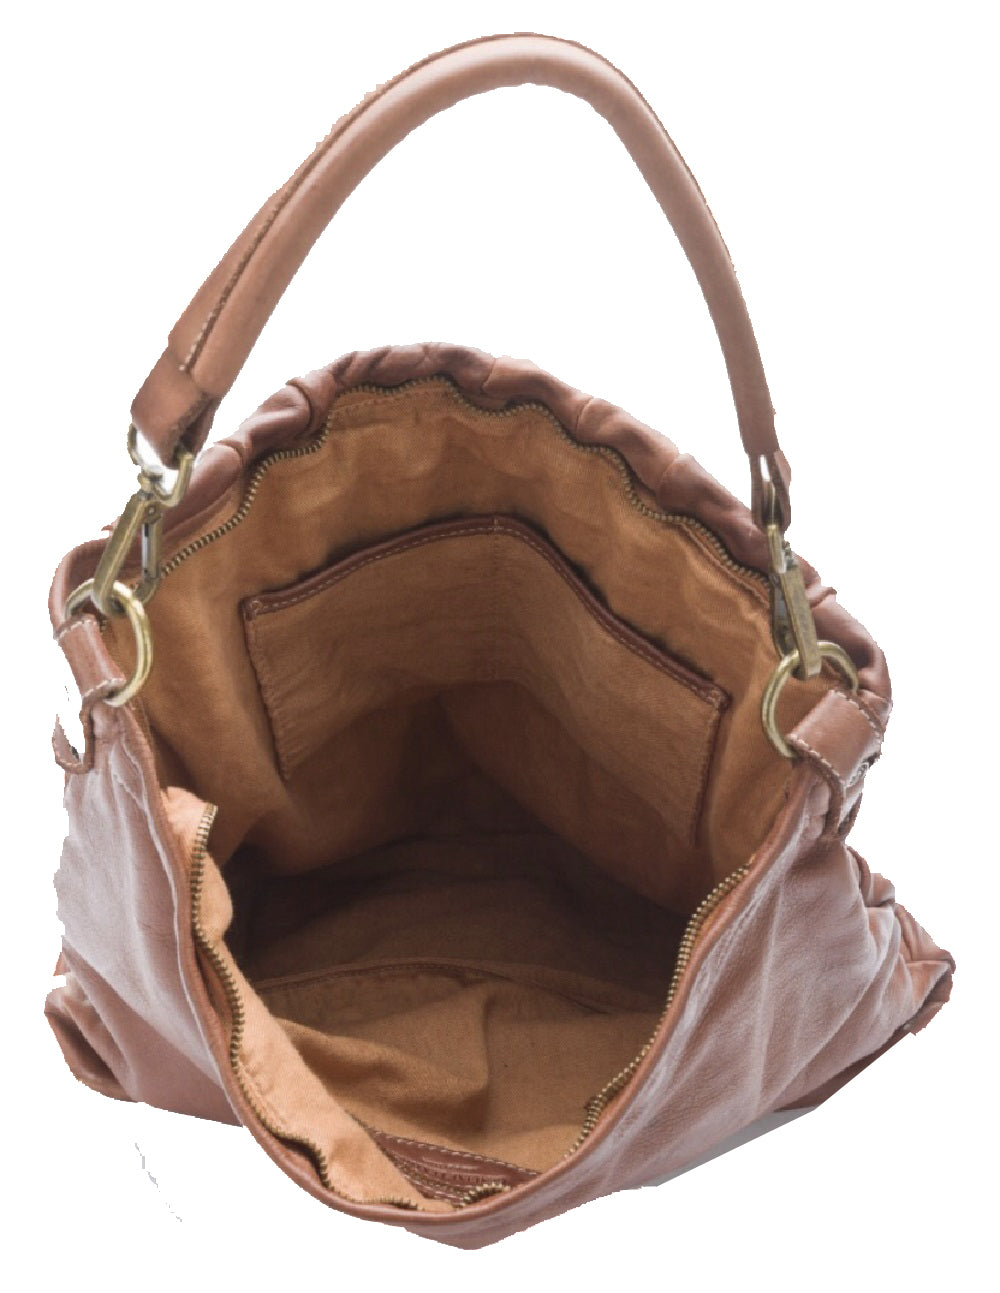 BZNA Bag Santino braun Italy Designer Damen Handtasche Schultertasche Tasche